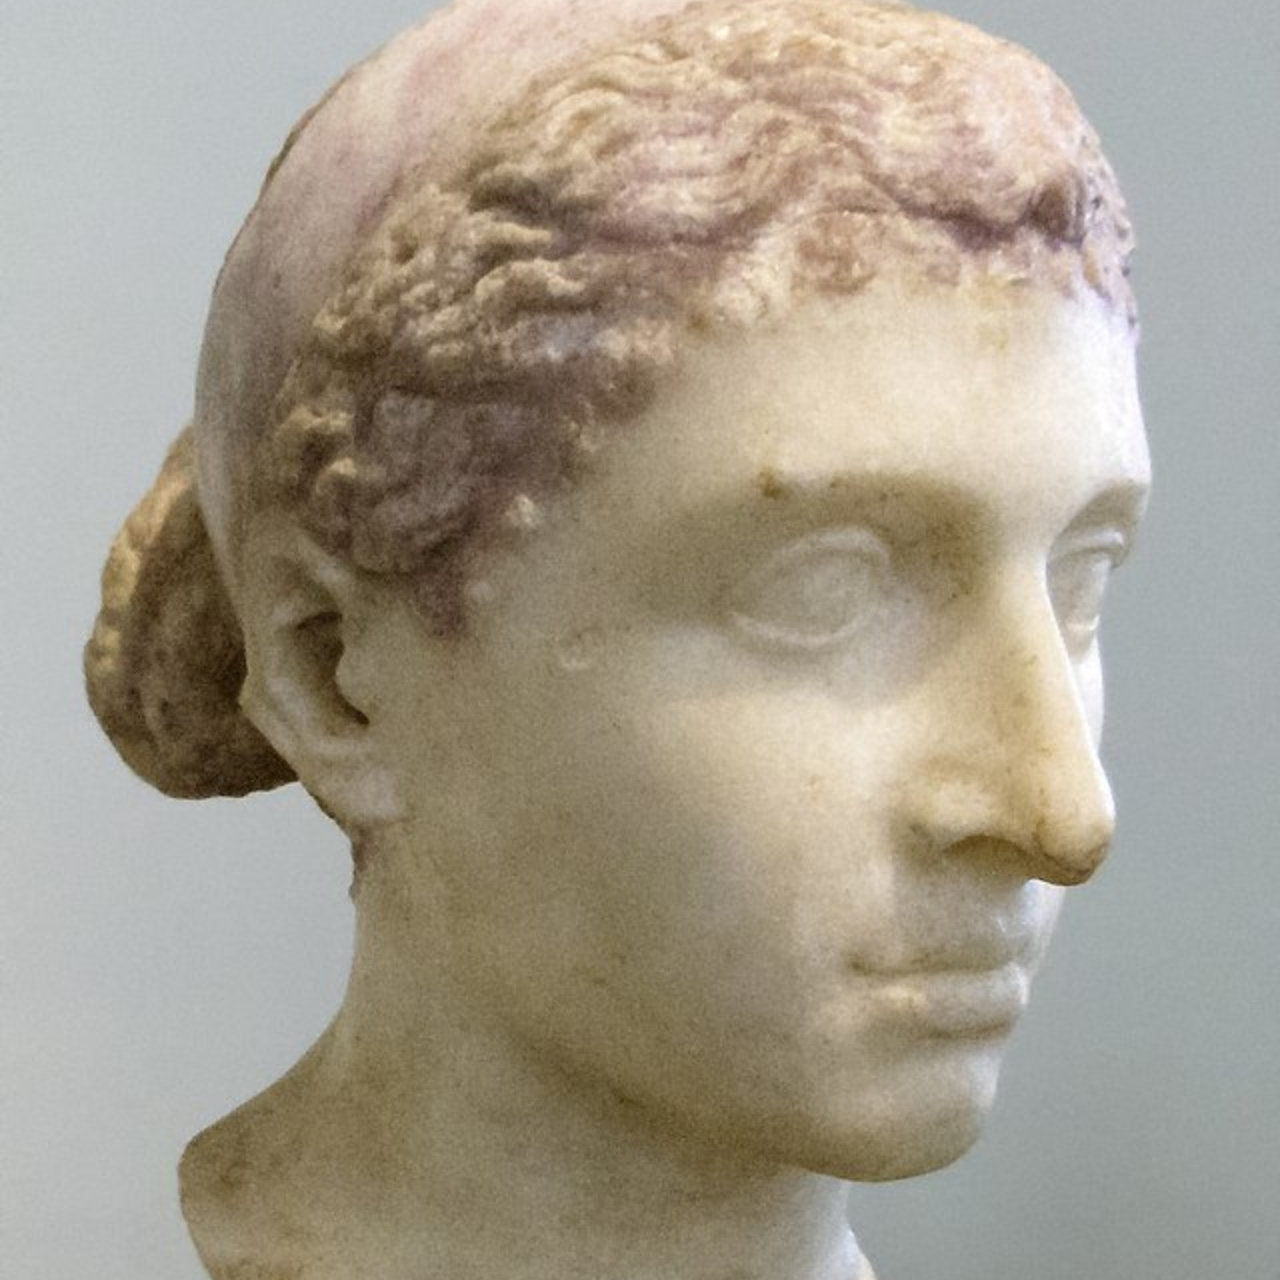 Busto de Cleópatra